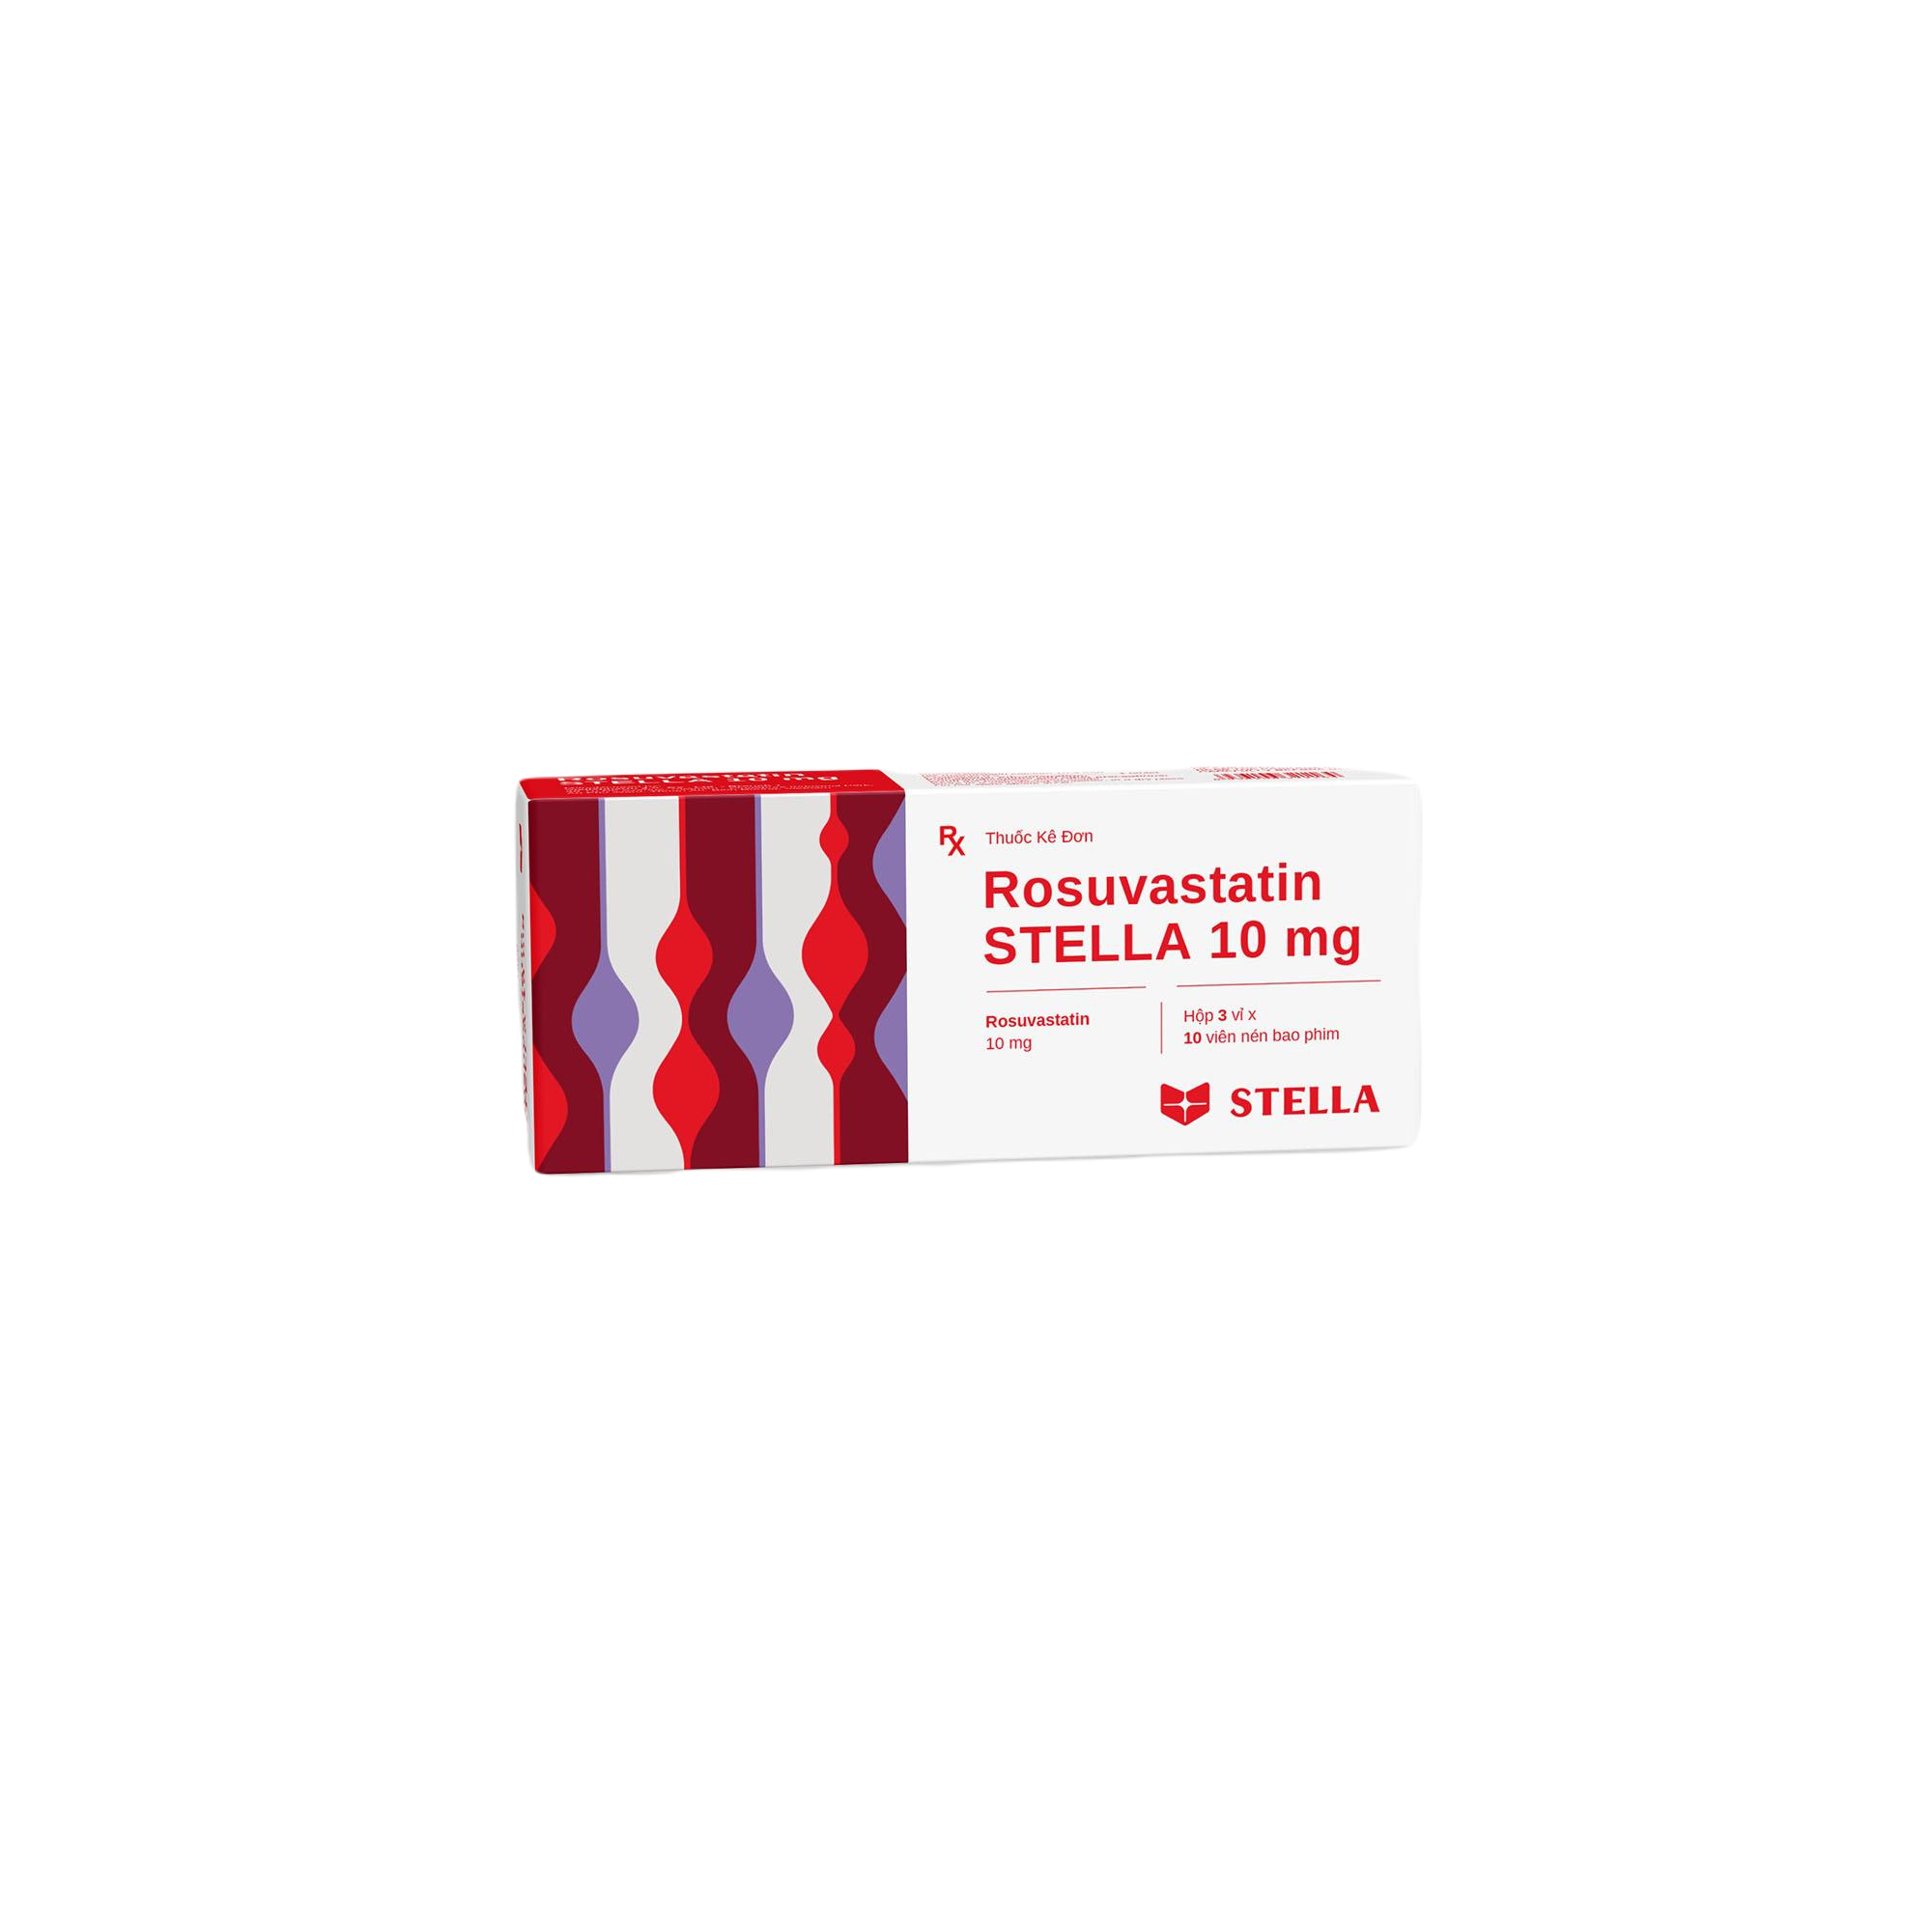 Rosuvastatin 10mg Stella (H/30v)